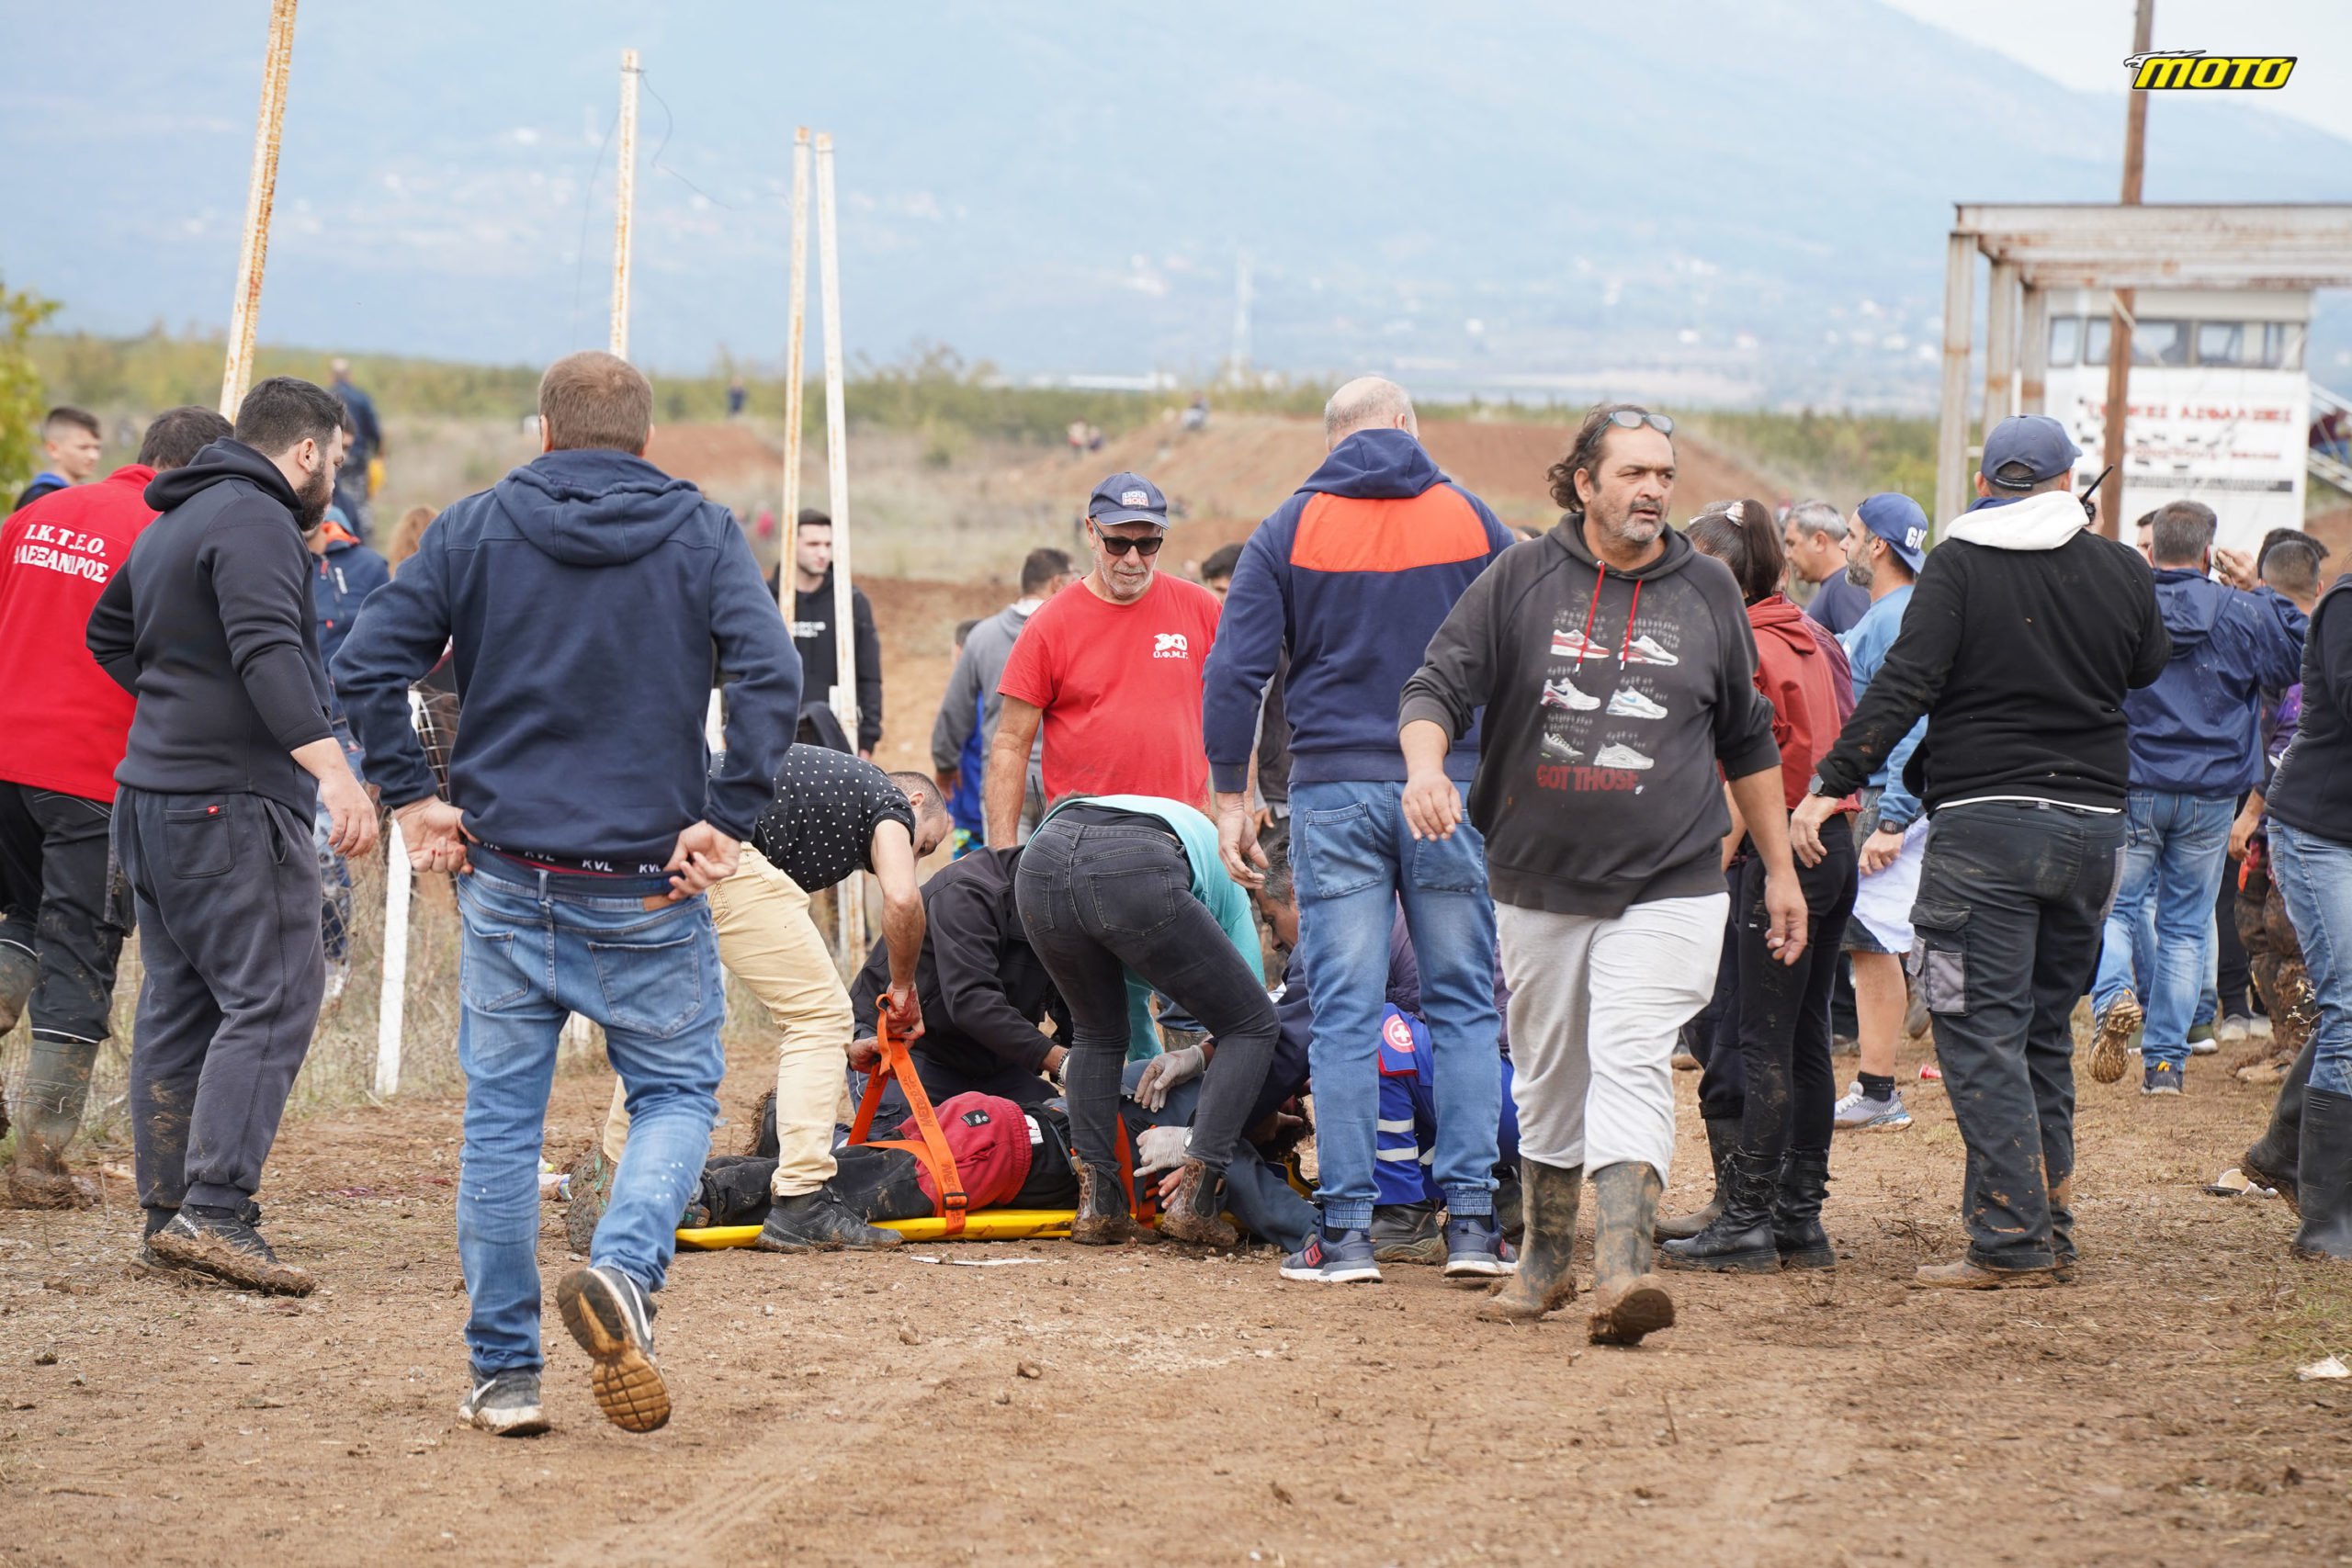 Σοβαρό ατύχημα σε αγώνες εντούρο στα Γιαννιτσά  | Βαριά τραυματισμένος 16χρονος Μυτιληνιός που ήταν ζώνη των μηχανικών